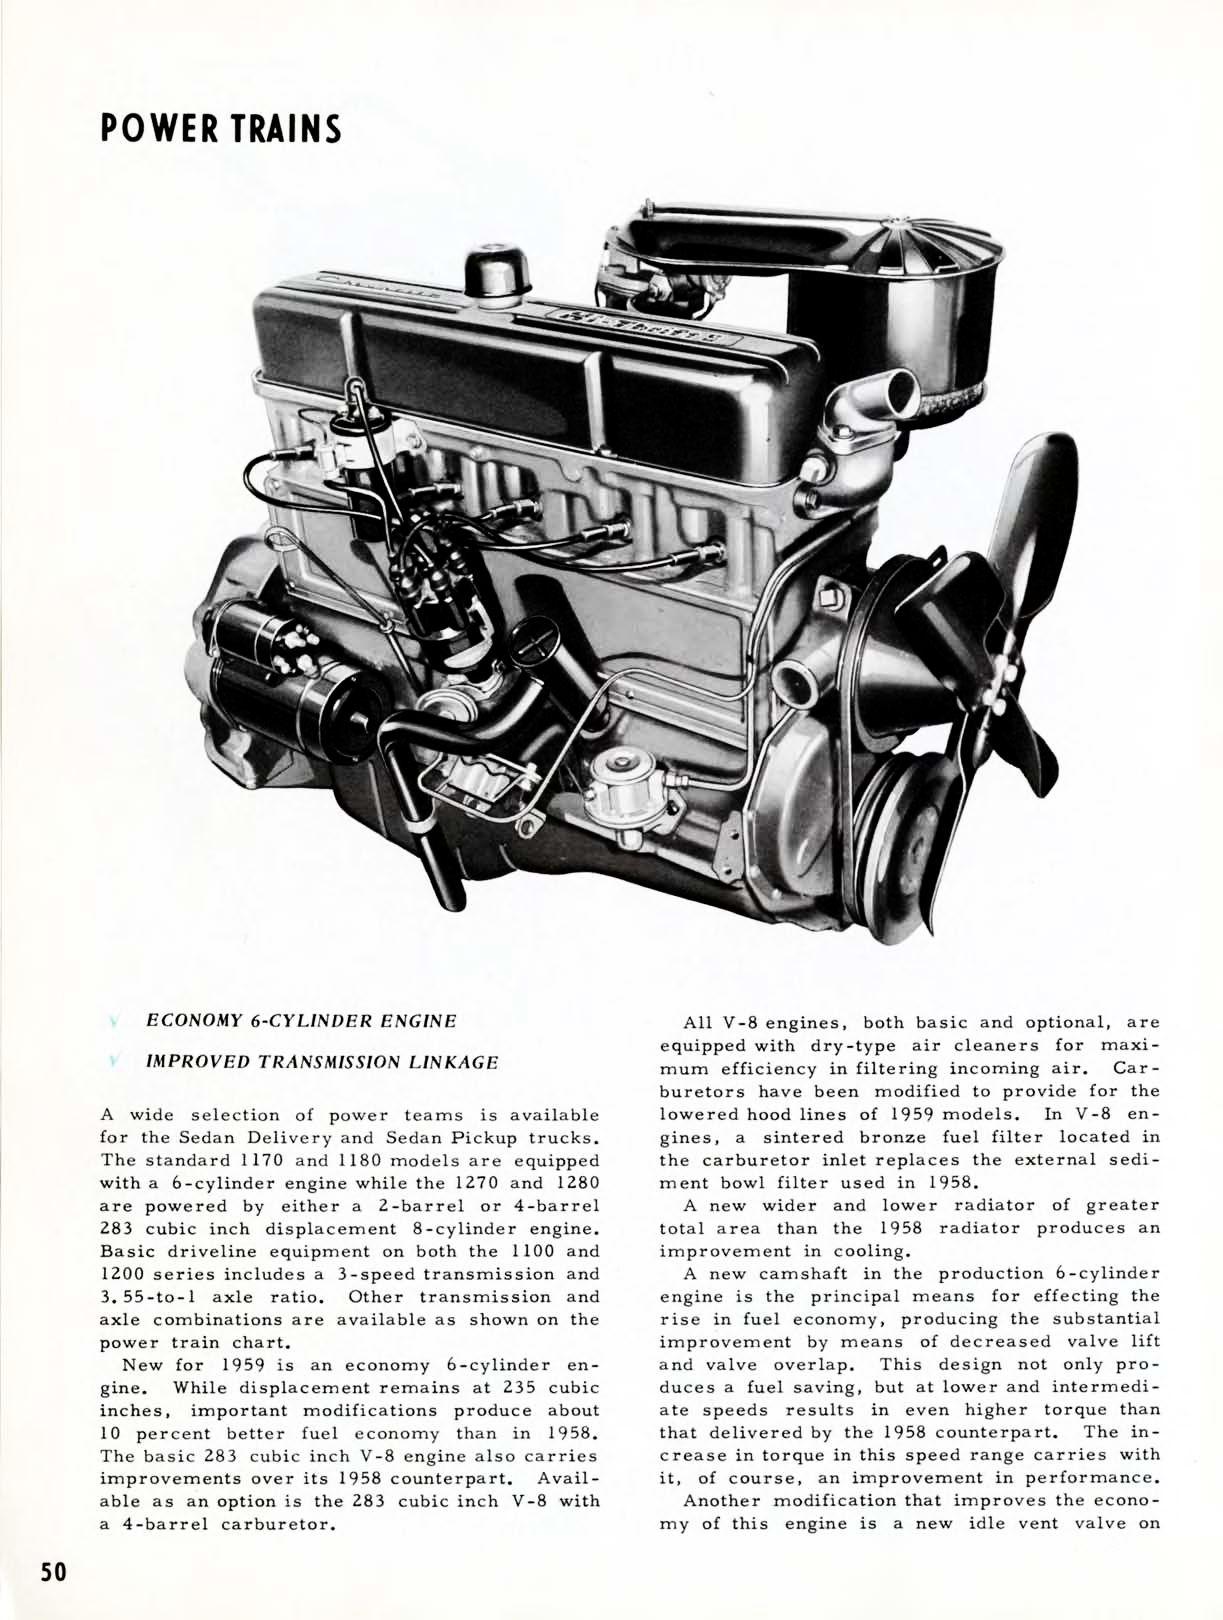 1959 Chevrolet Truck Engineering Features-50